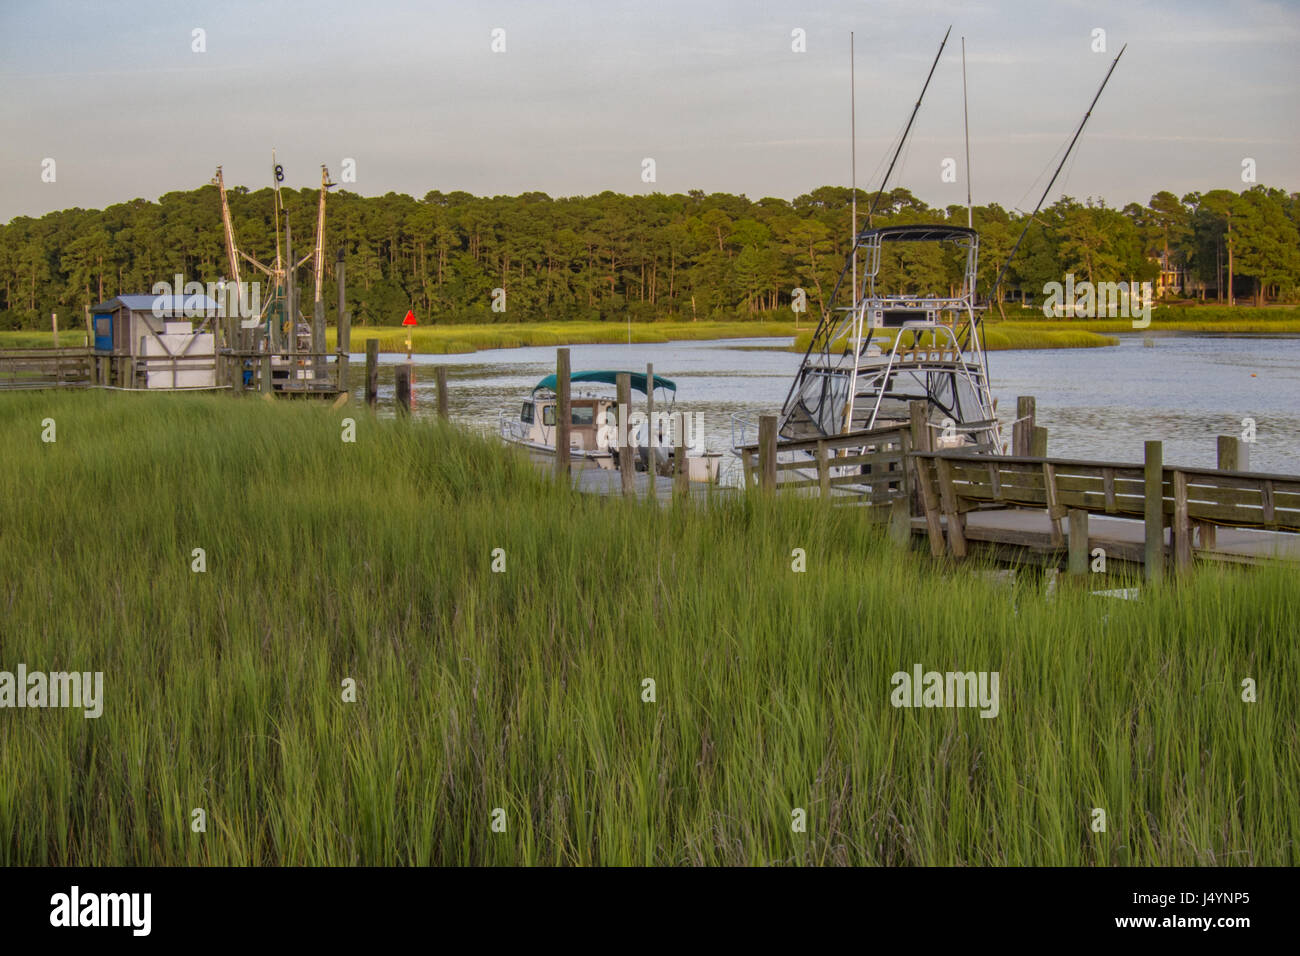 Fishing Boats in Calabash, North Carolina, USA Stock Photo